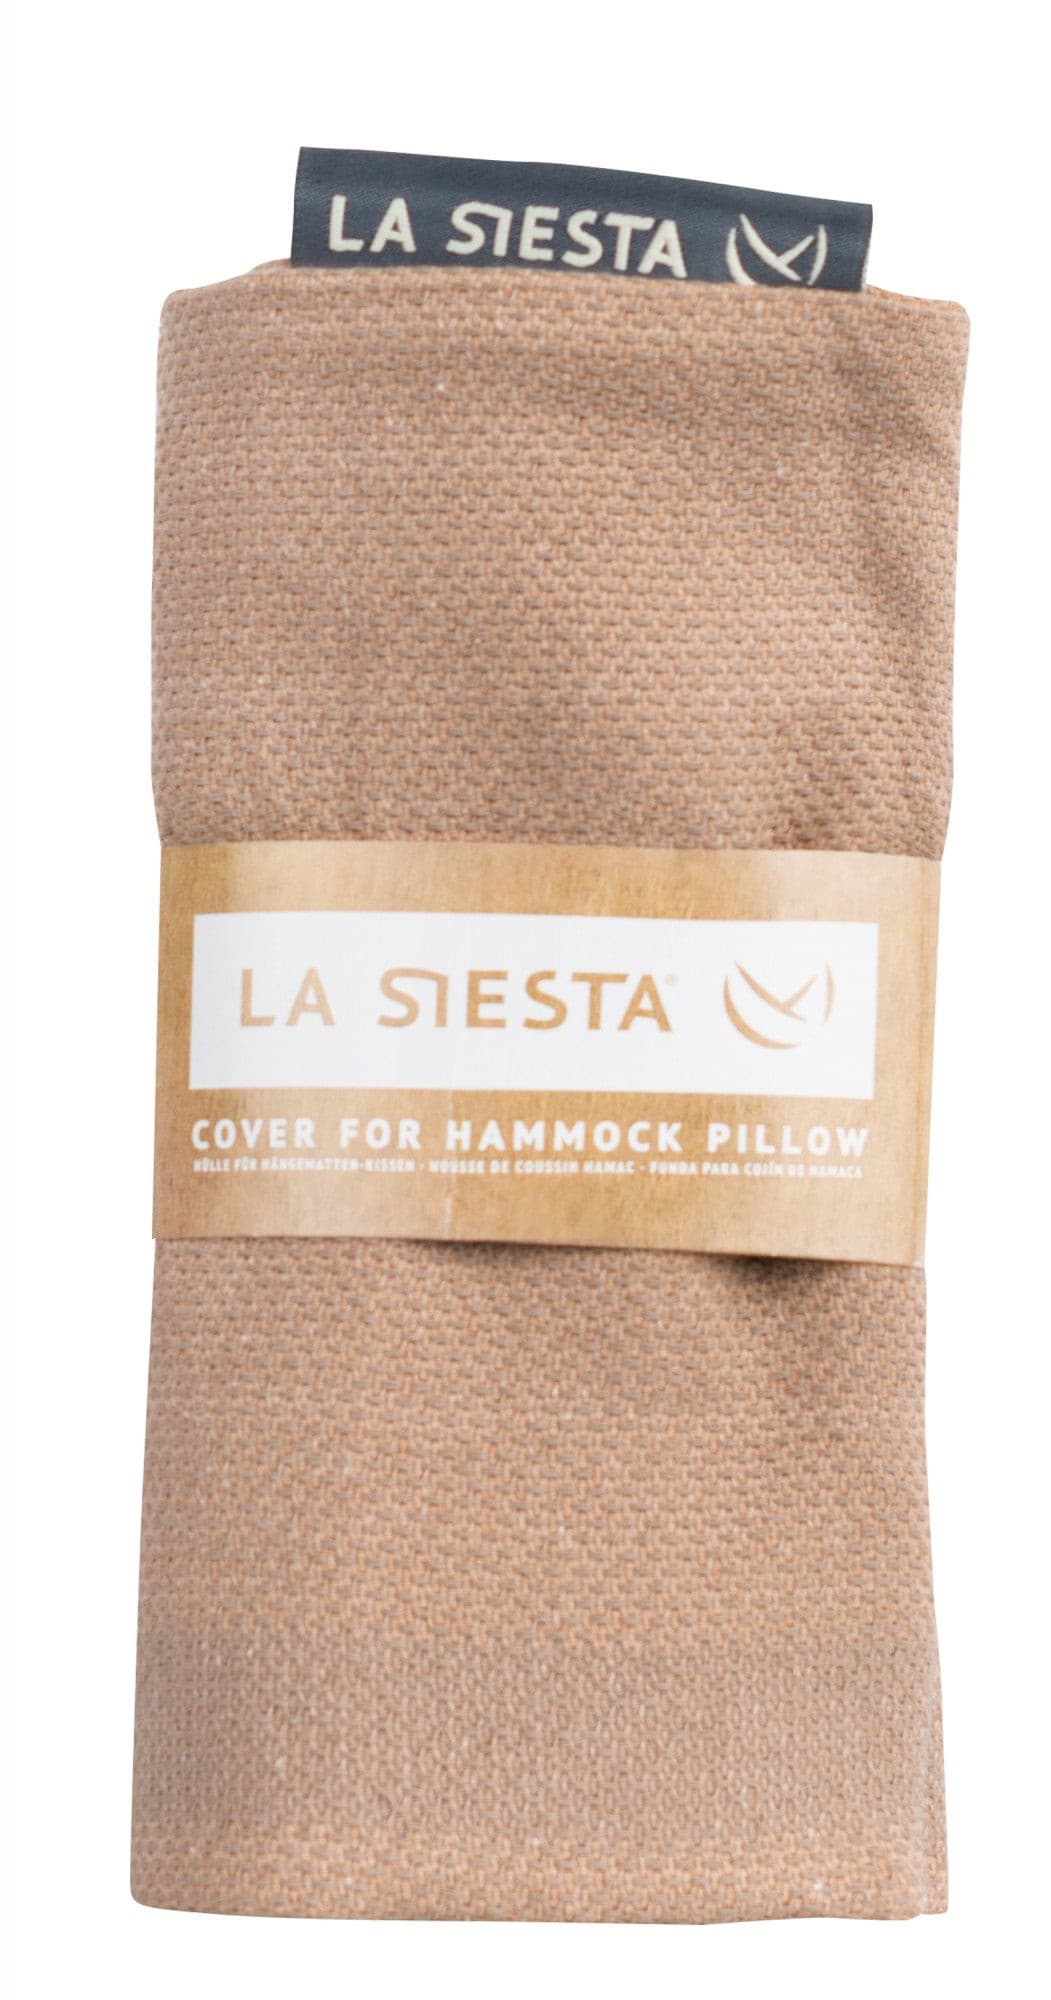 Benção Muscade - Organic Cotton Cover for Hammock Pillow